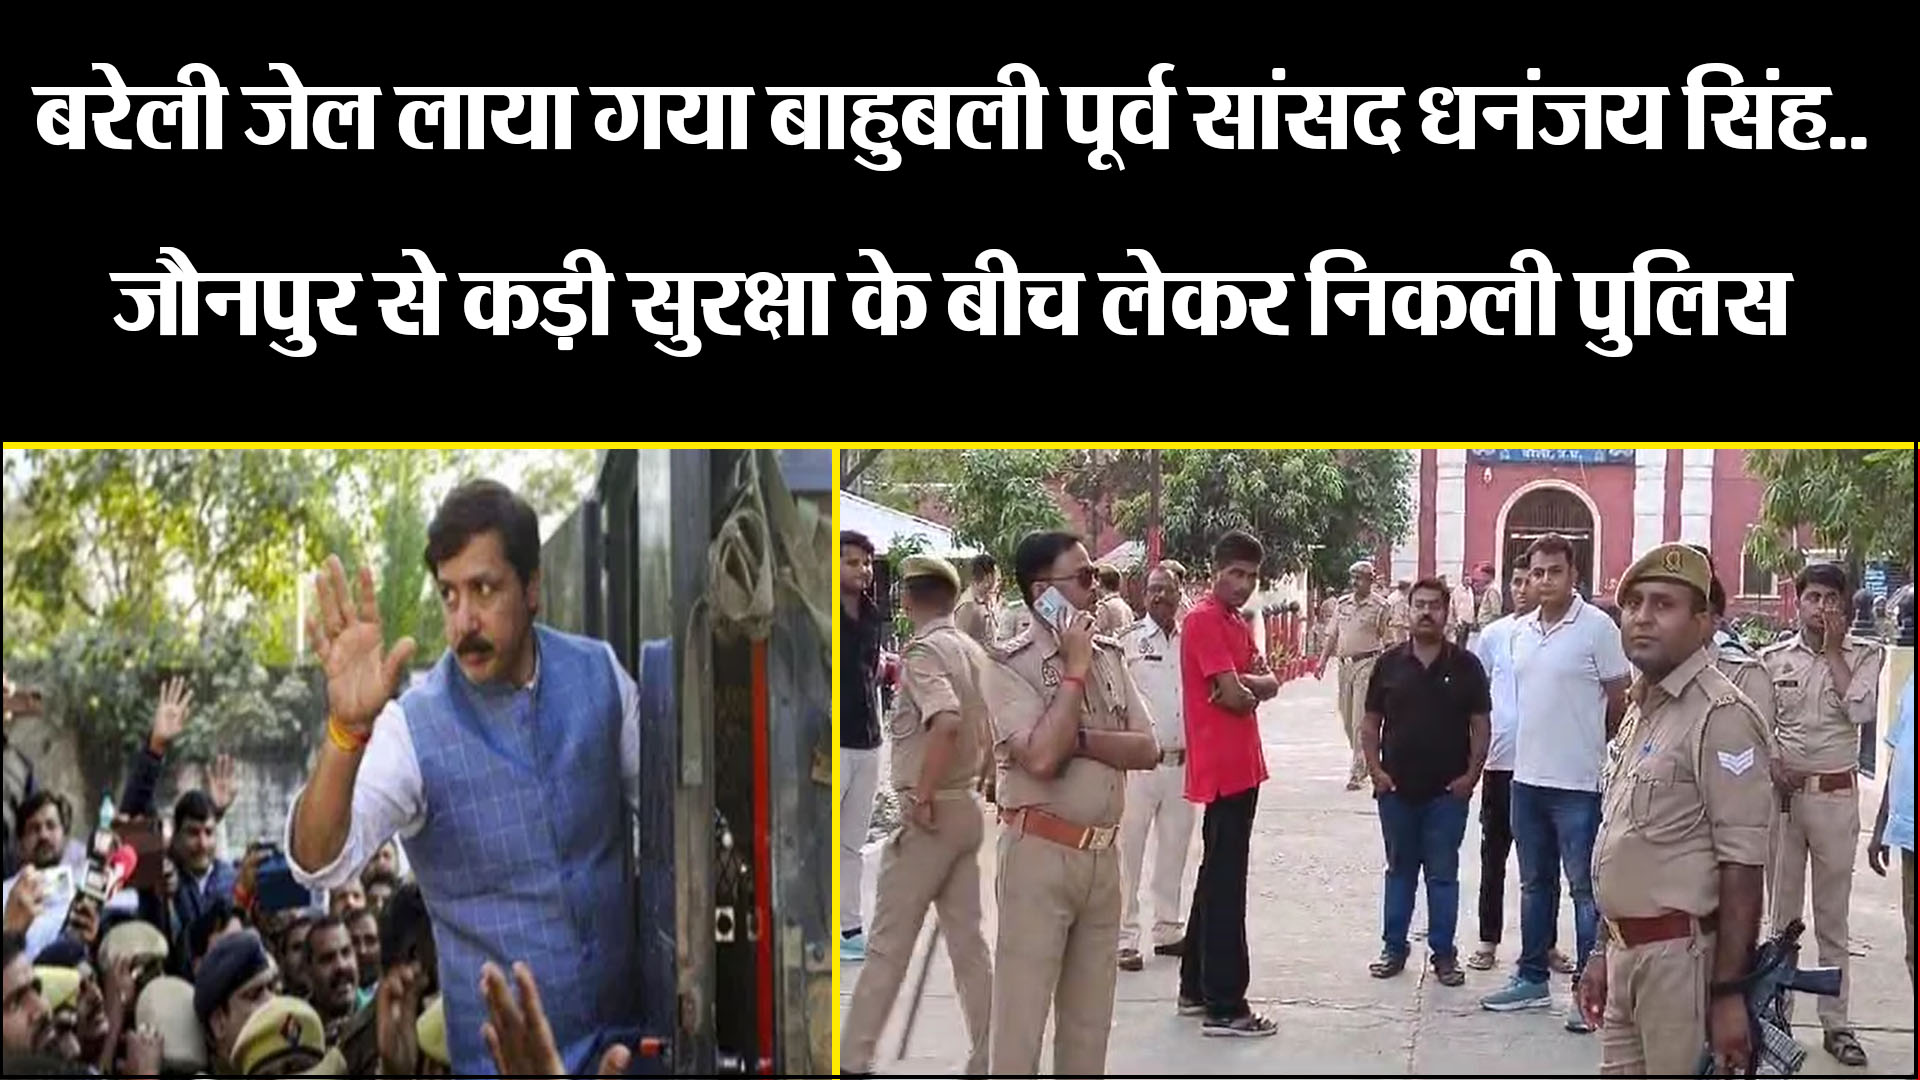 बरेली जेल लाया गया बाहुबली पूर्व सांसद धनंजय सिंह.. जौनपुर से कड़ी सुरक्षा के बीच लेकर निकली पुलिस